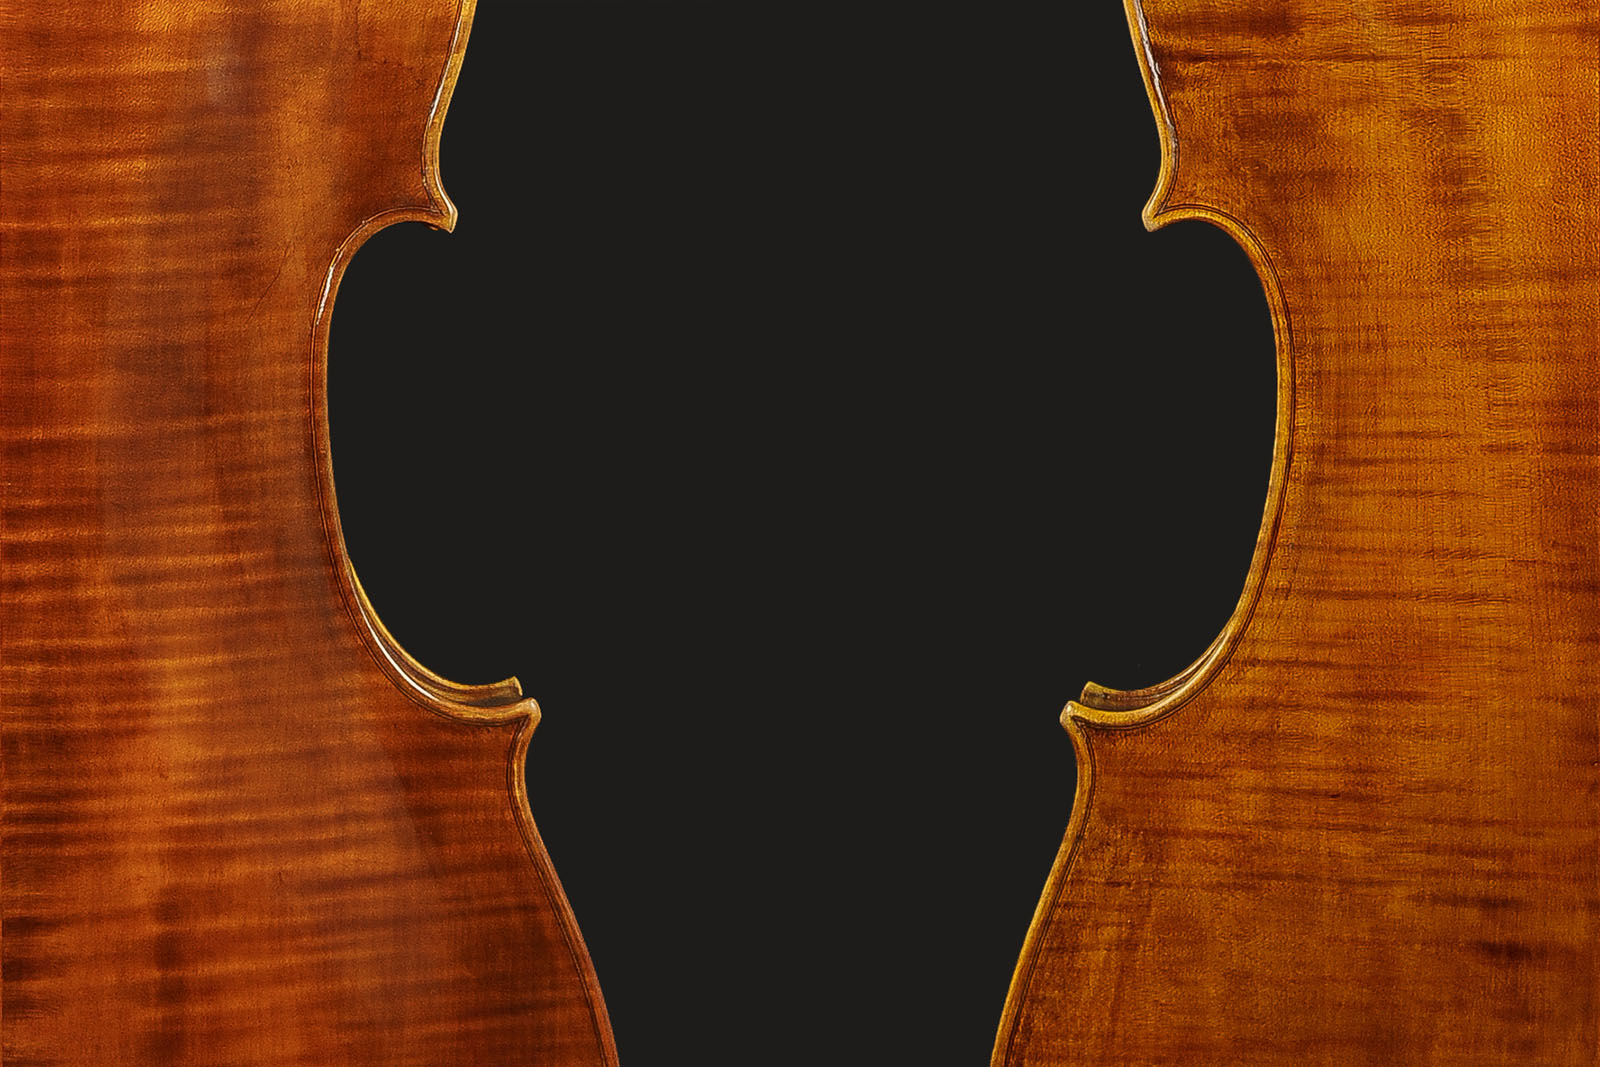 Antonio Stradivari Cremona 1712 “Tullo Ostilio“ - Image 7